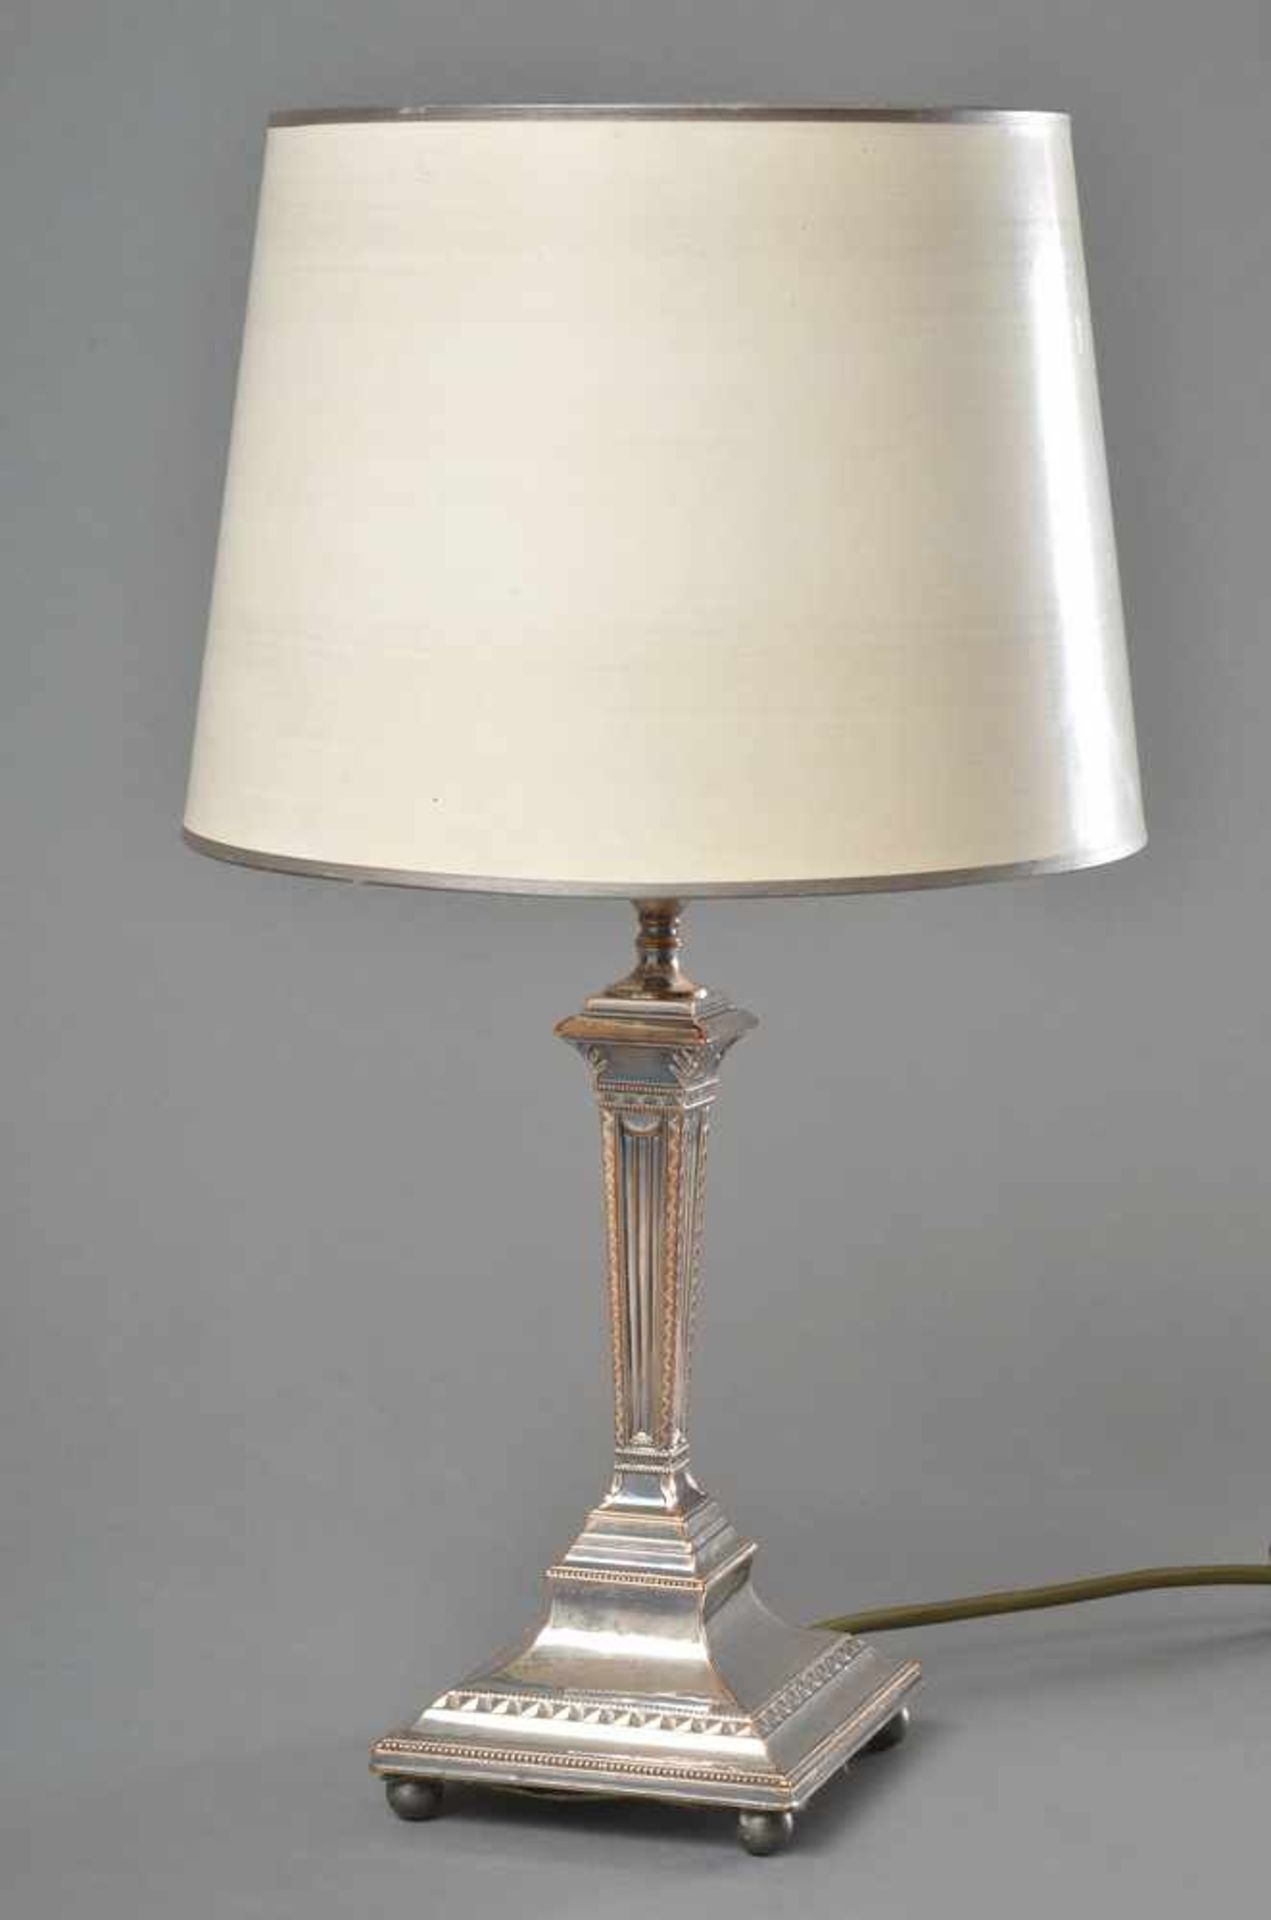 Englischer Leuchter als Lampe montiert, Copper plated, H. 30cm, etwas durchgeputzt